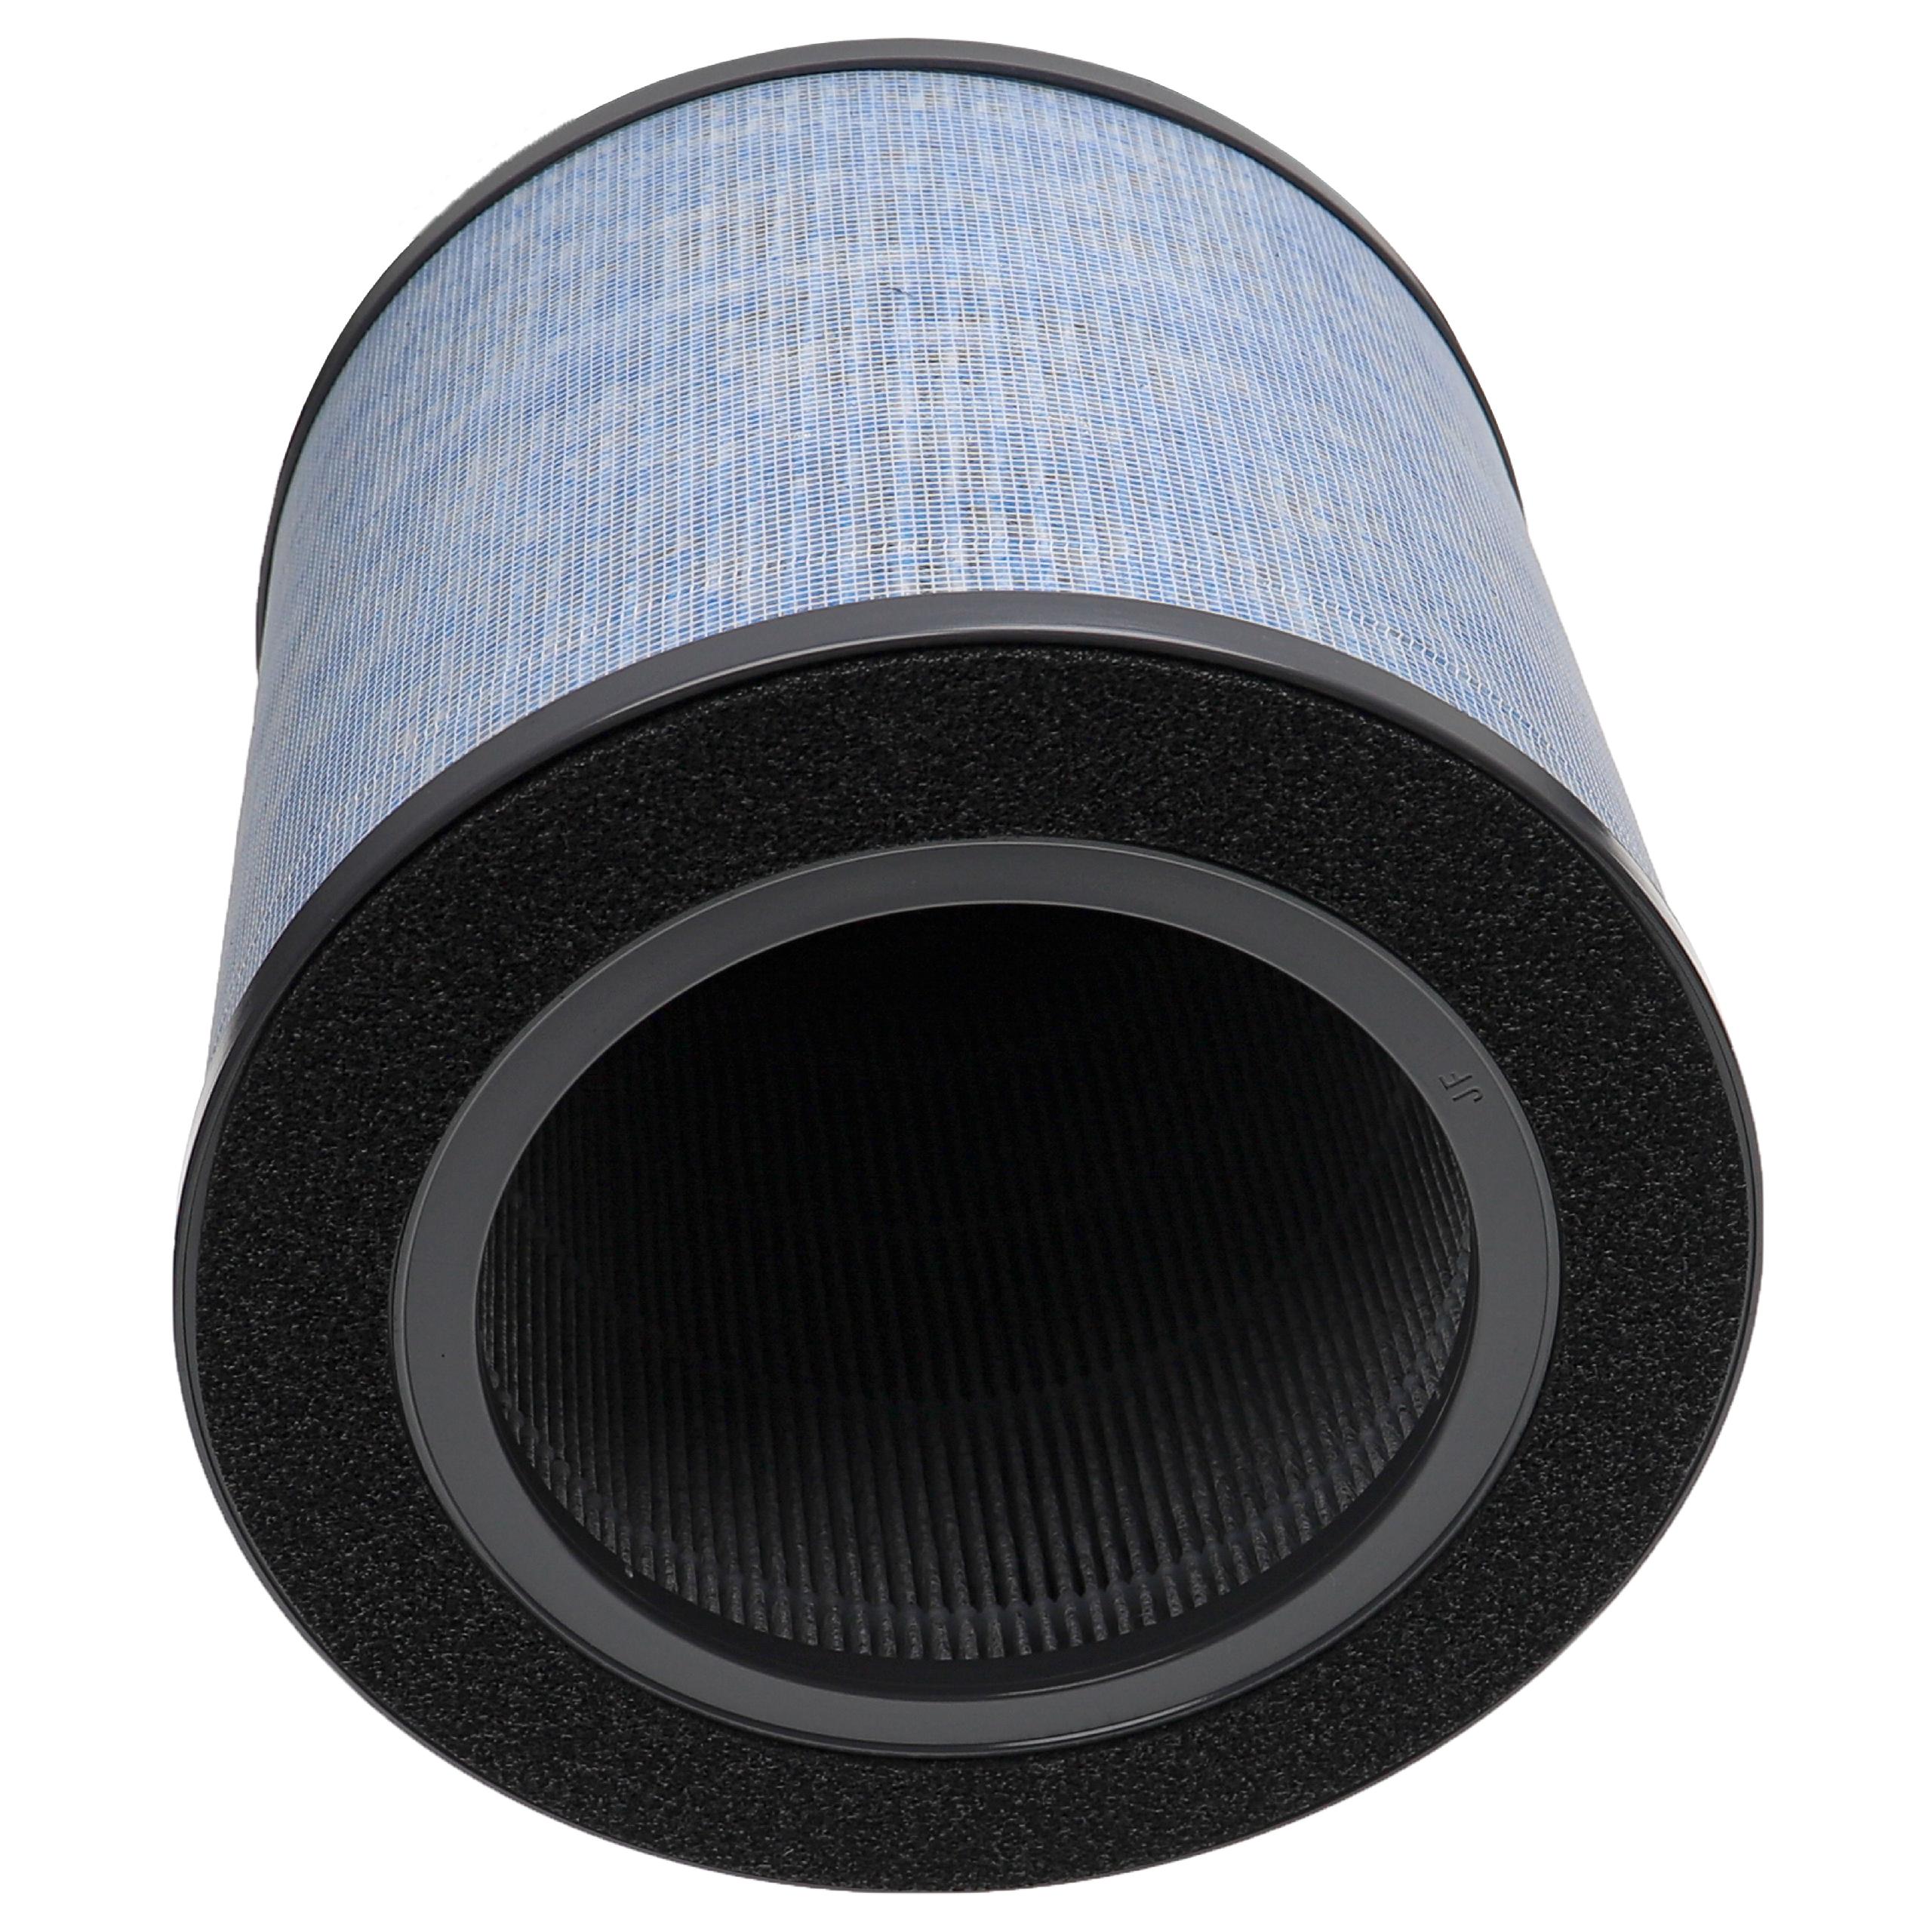 Luftreiniger-Filter als Ersatz für Comedes PT94101 - Kombi-Vorfilter+Hepa+Aktivkohle